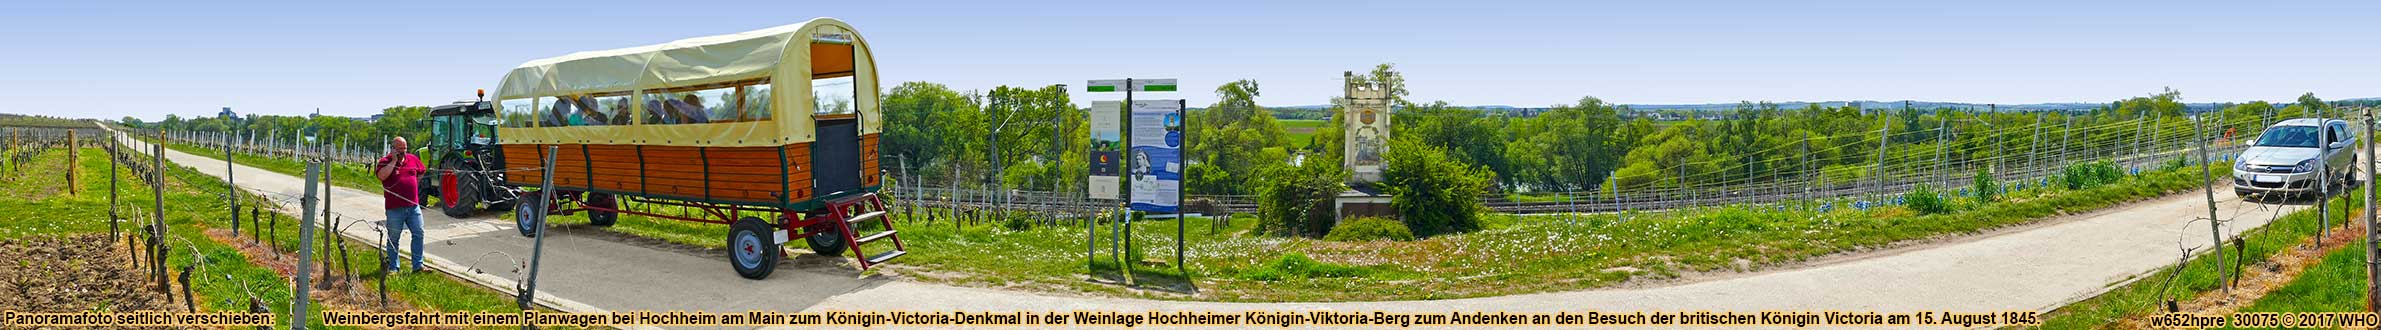 Rheingau-Weinbergsfahrt mit einem Planwagen bei Hochheim am Main zum Königin-Victoria-Denkmal am Königin-Viktoria-Berg.